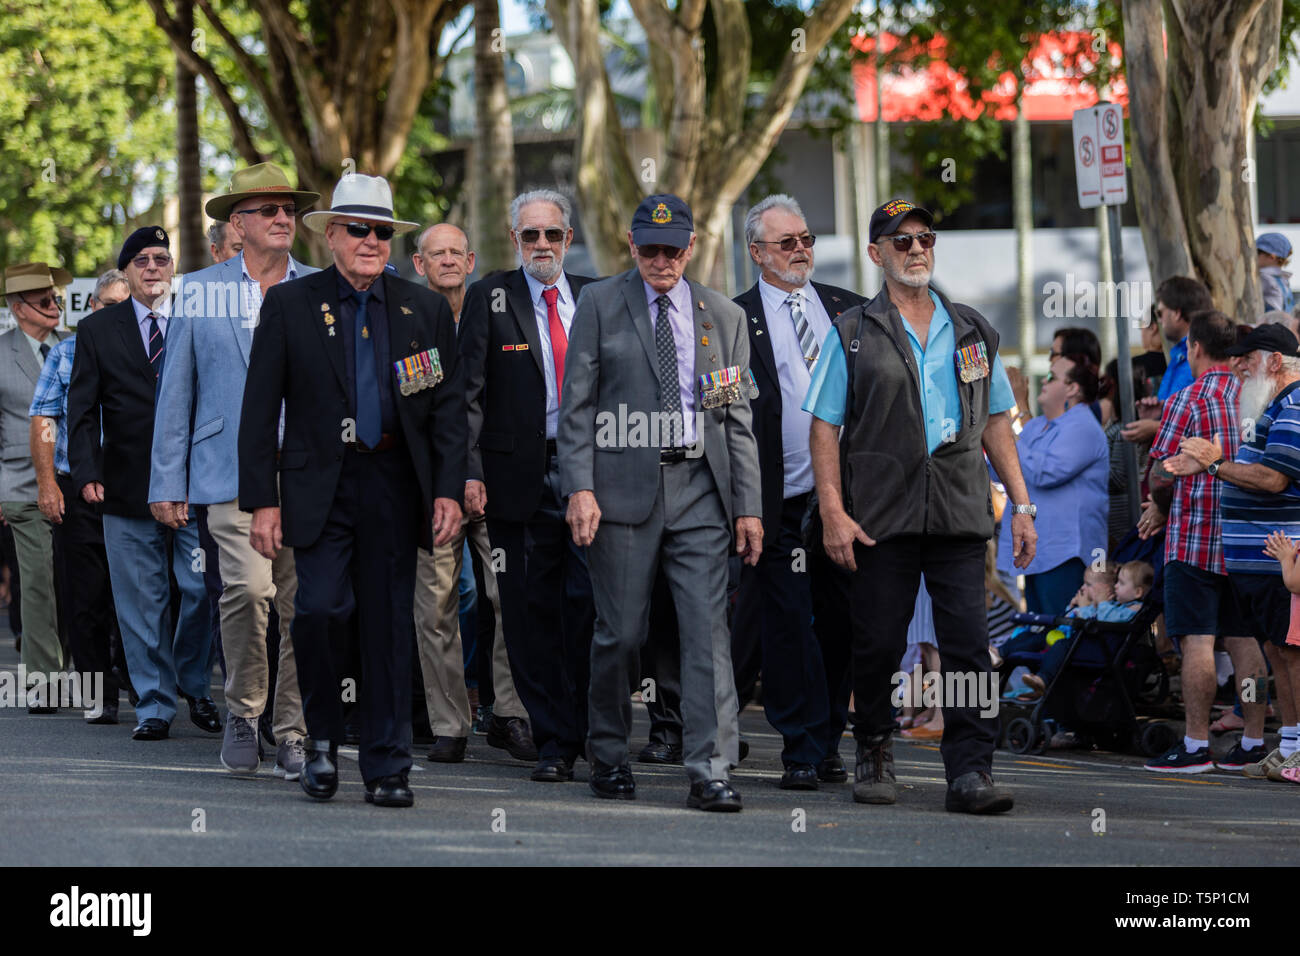 Restituite i veterani che hanno combattuto in coreano e Sud Est Asiatico distribuzioni di guerra, marciare insieme orgogliosamente Foto Stock